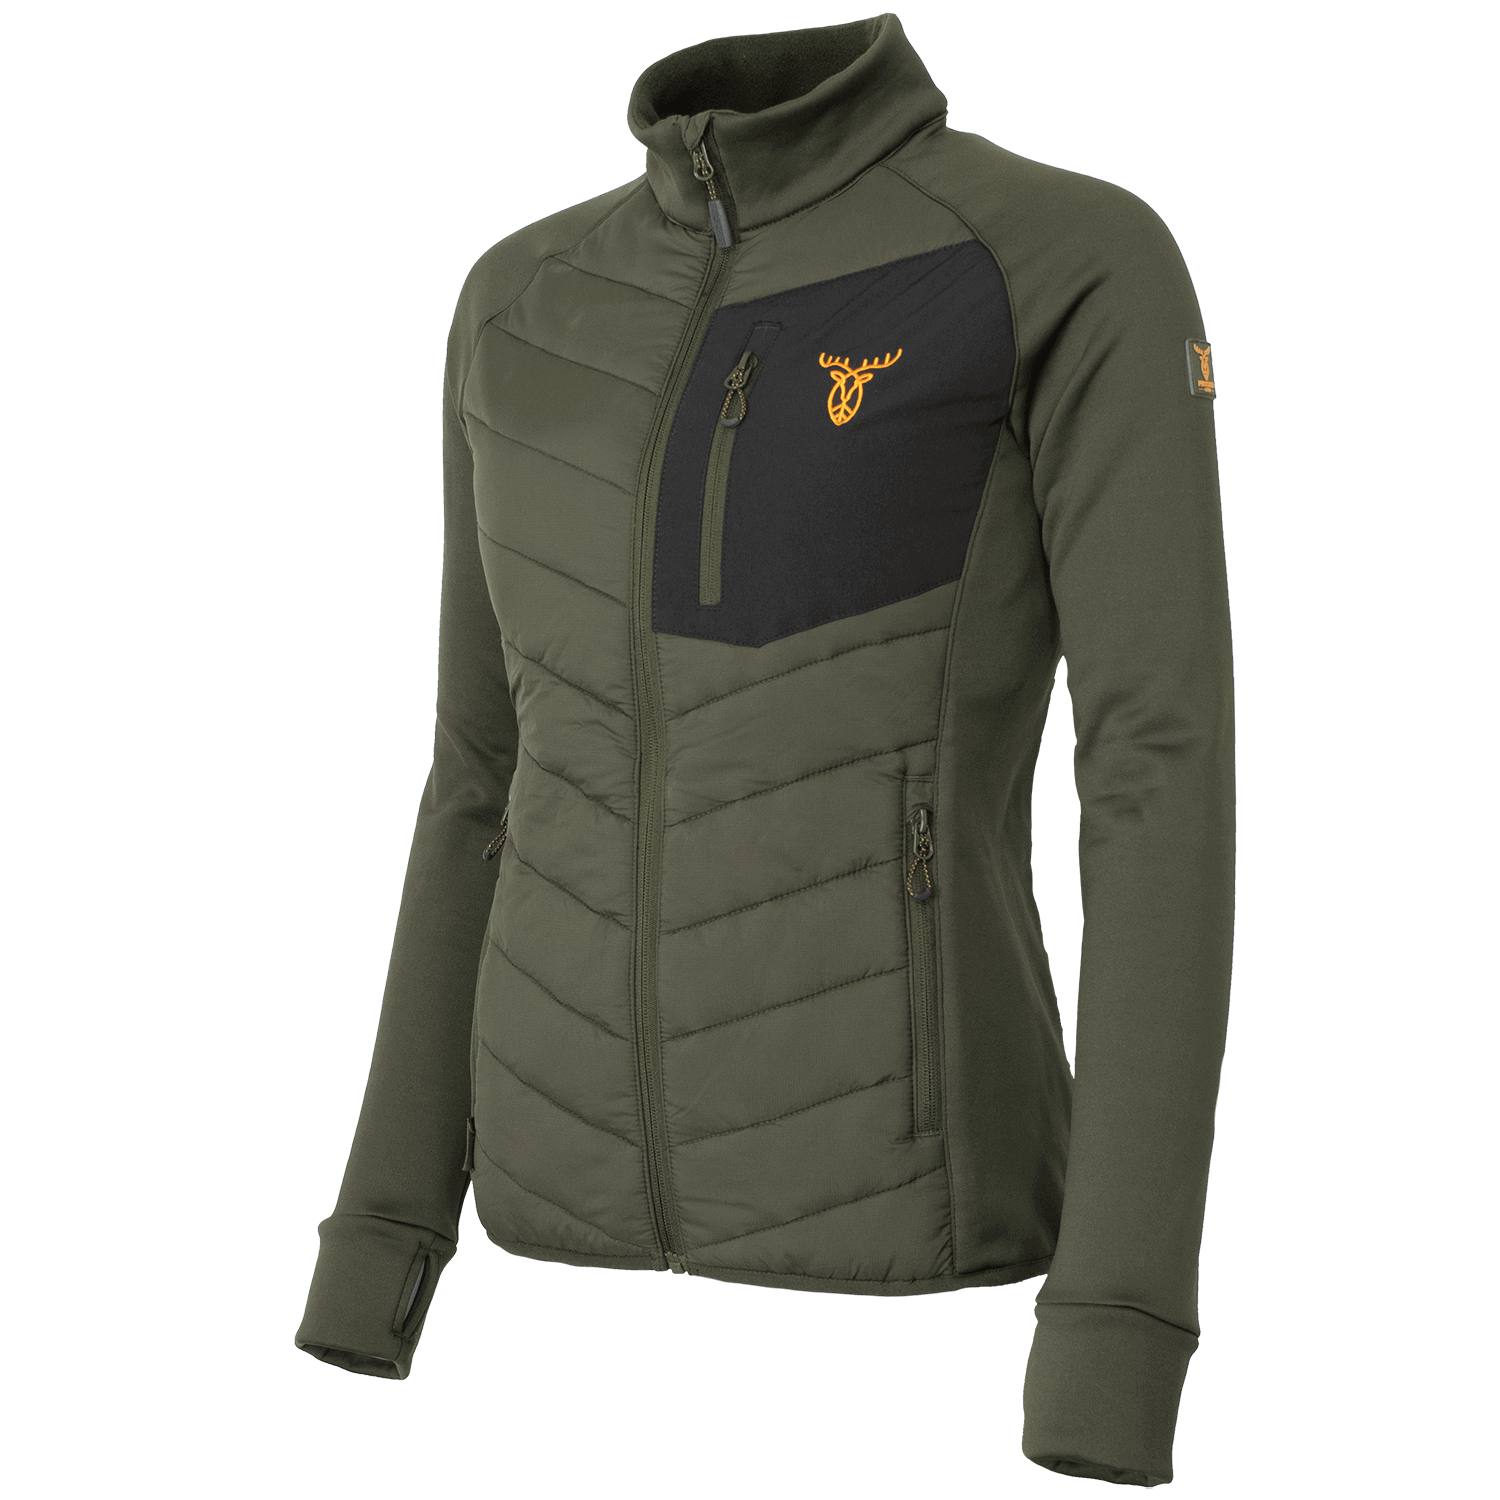 Pirscher Gear Hybrid Fleece Ladies Jacket - Hunting Jackets